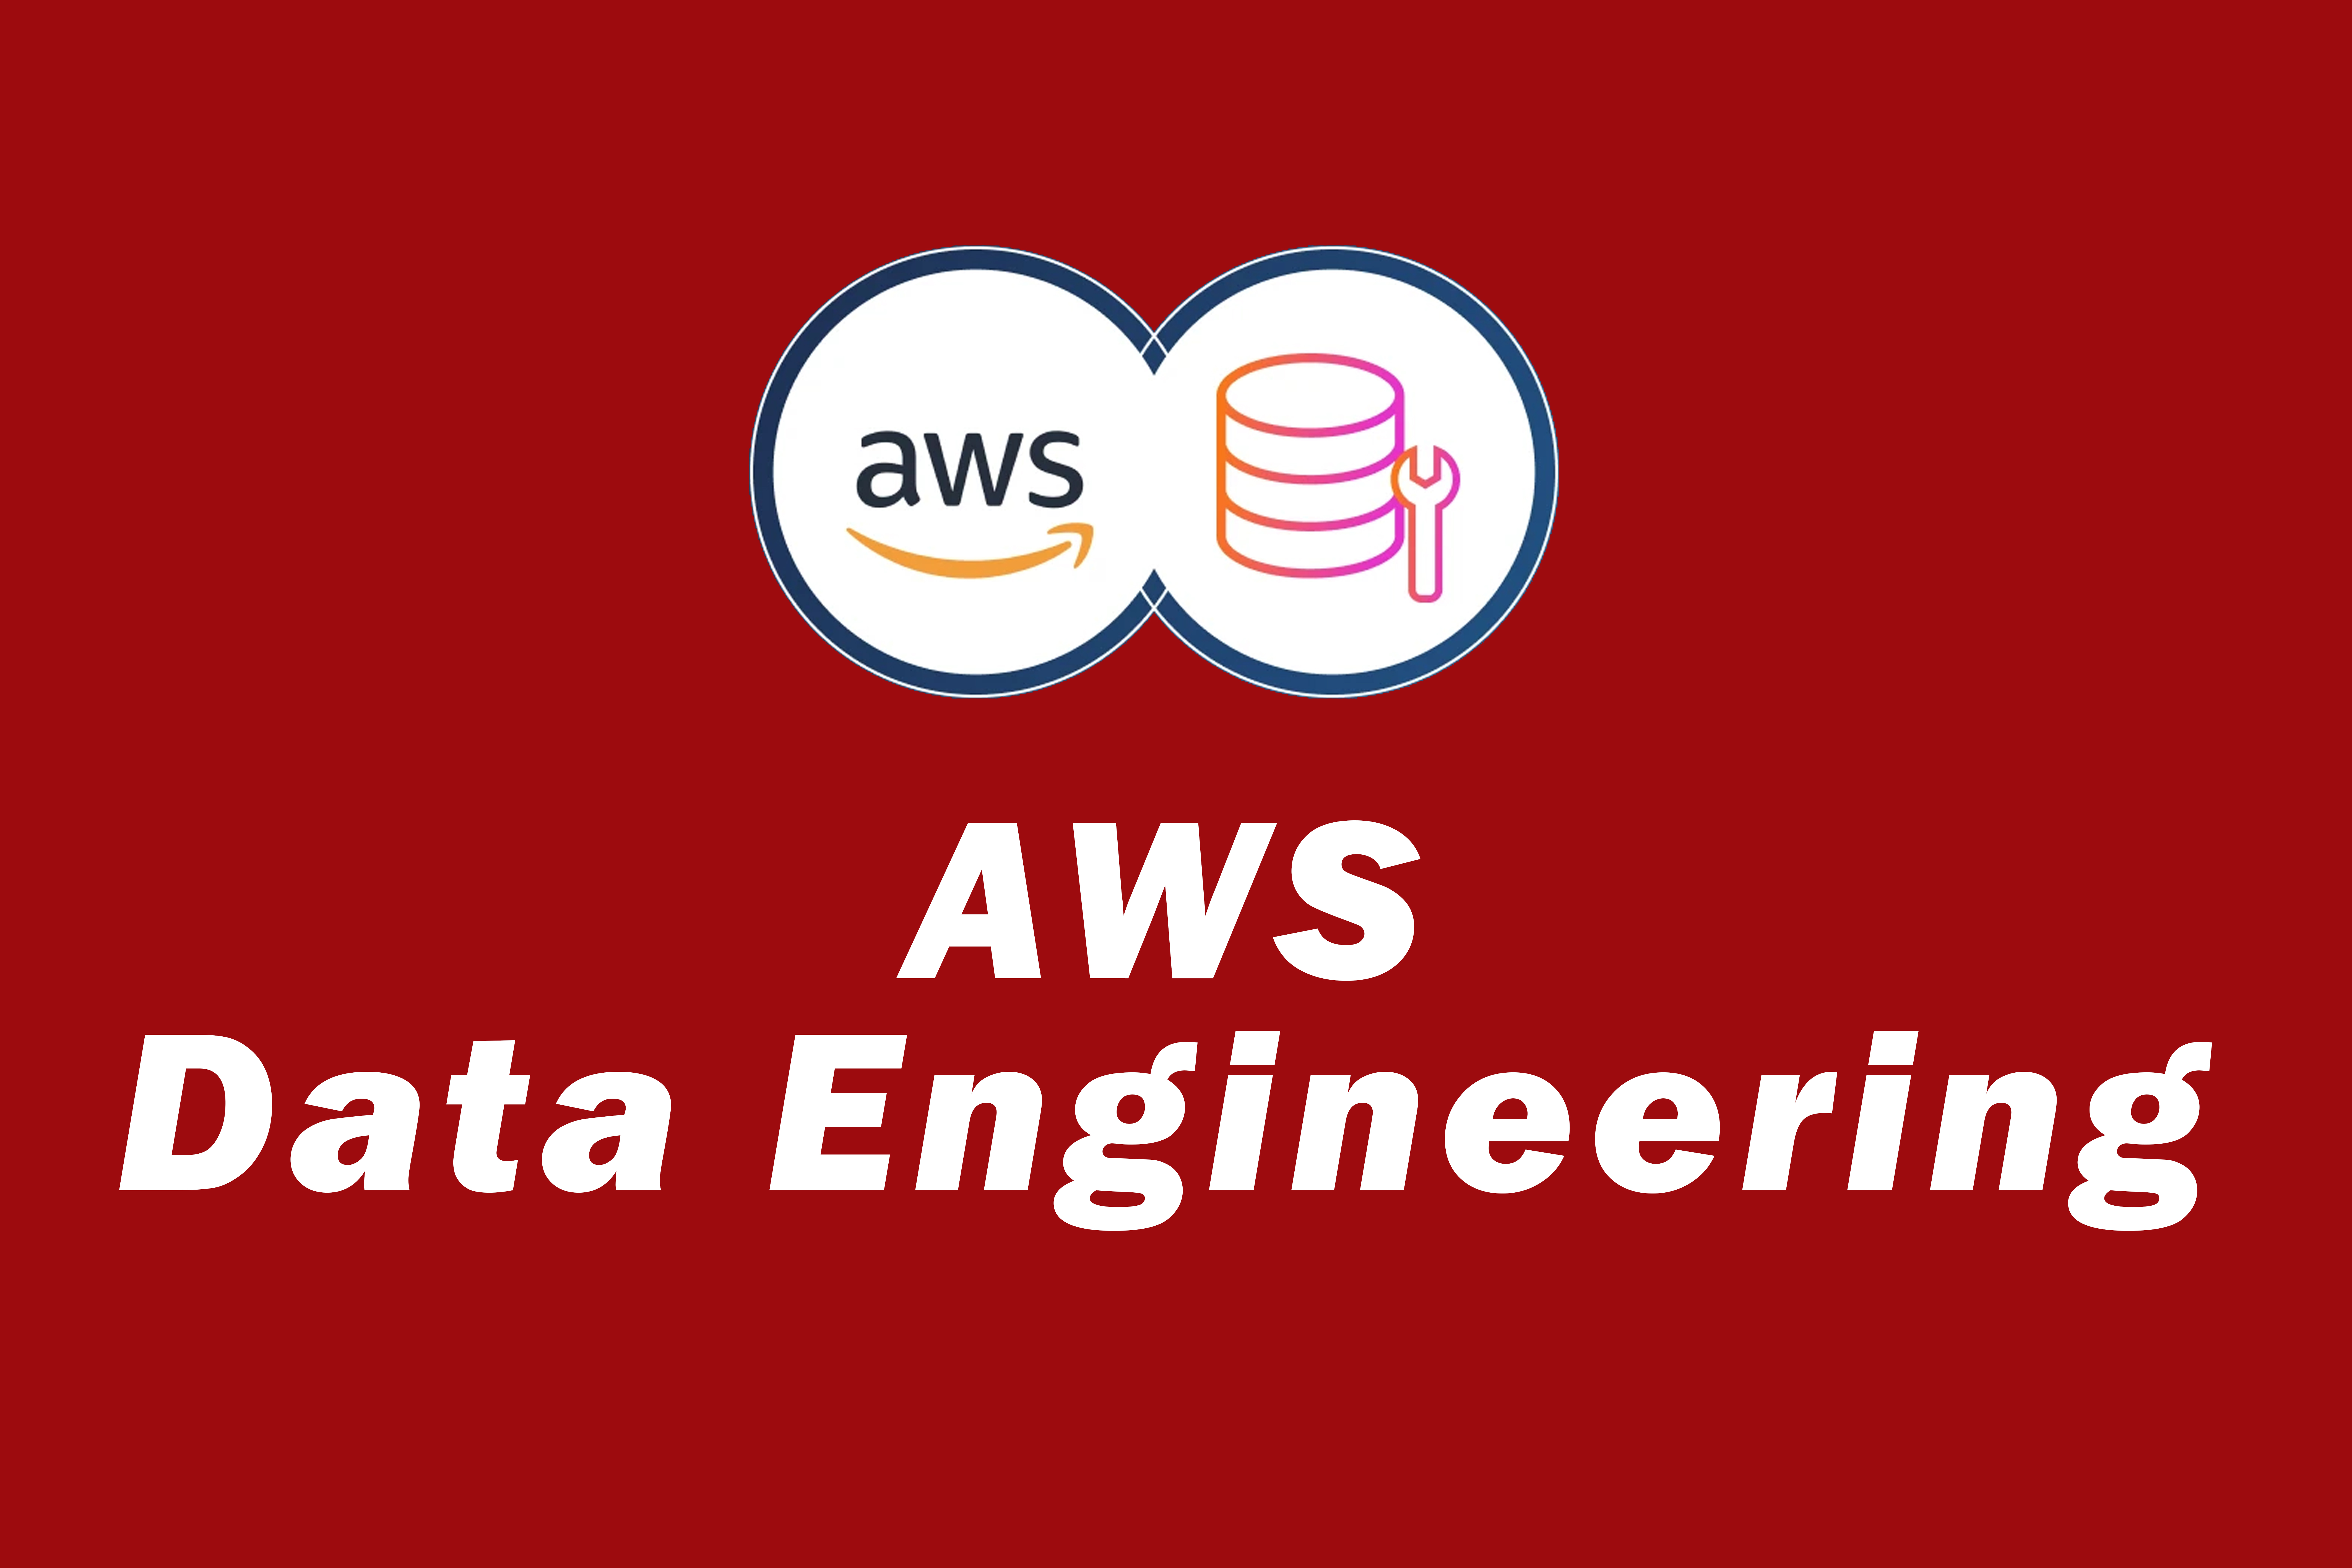 AWS Data Engineering with Data Analytics